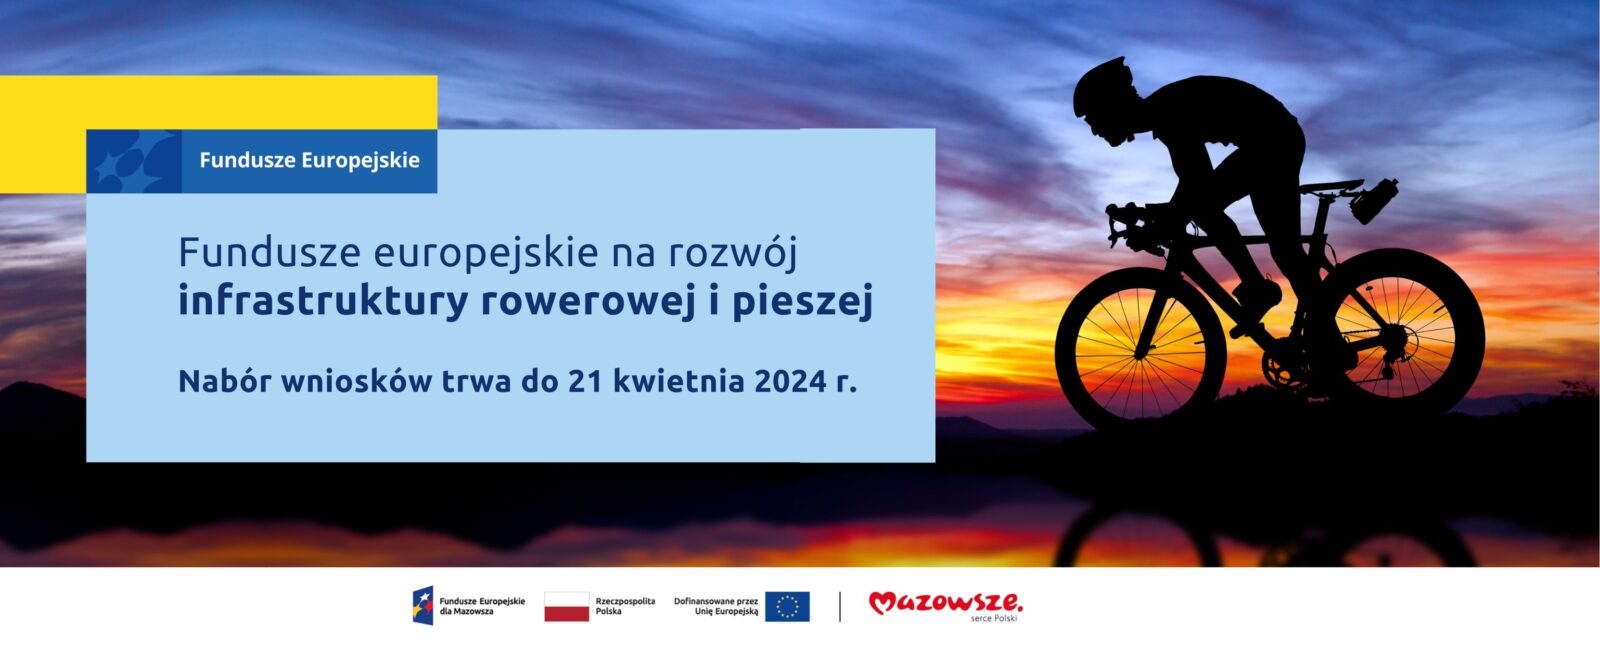 Na grafice znajduje się hasło: Fundusze europejskie na rozwój infrastruktury rowerowej i pieszej. Nabór wniosków trwa do 21 kwietnia 2024 r. W tle zdjęcie rowerzysty.